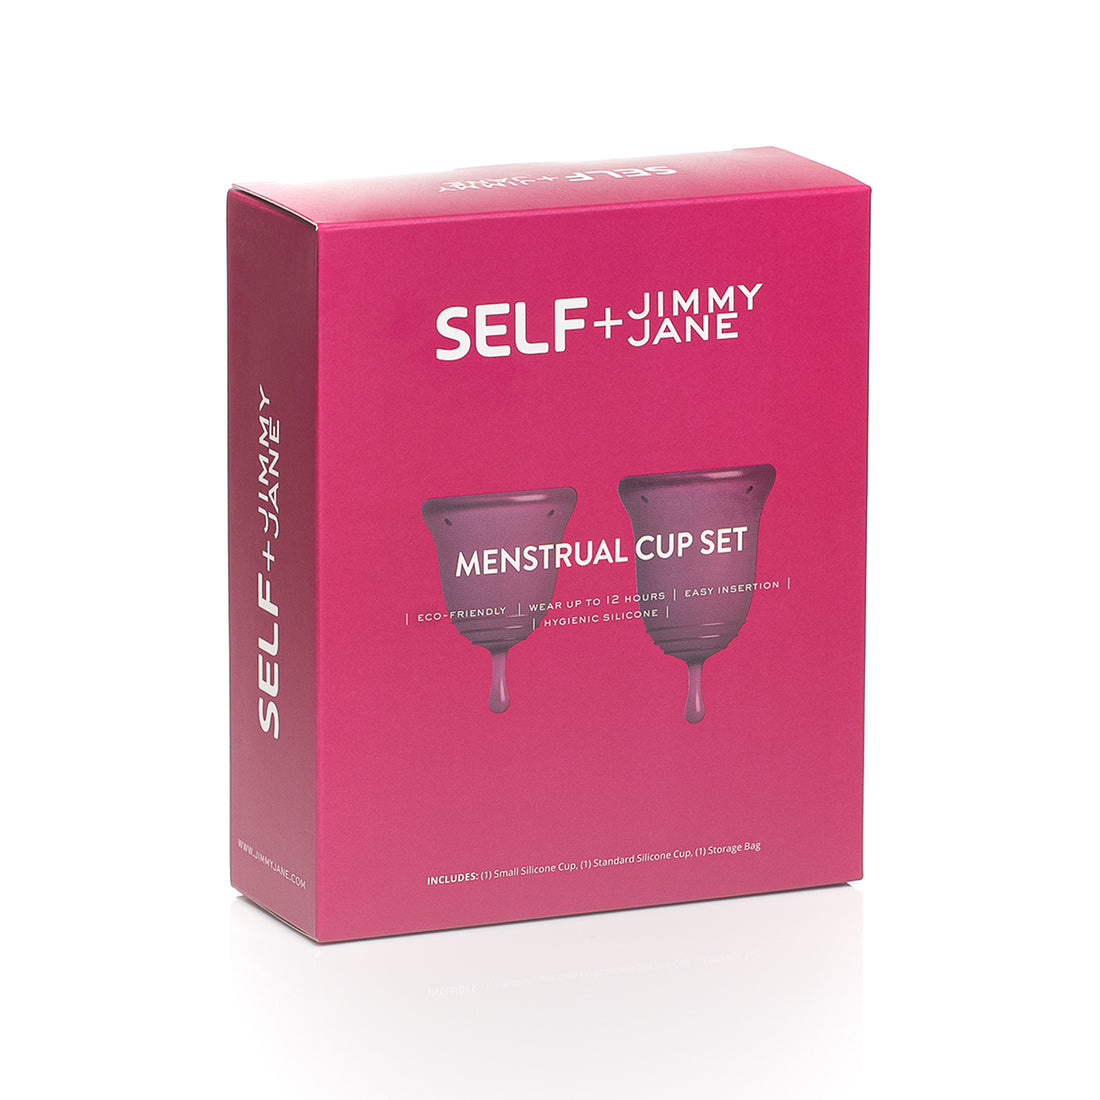 Self + Jimmyjane Menstrual Cup set packaging